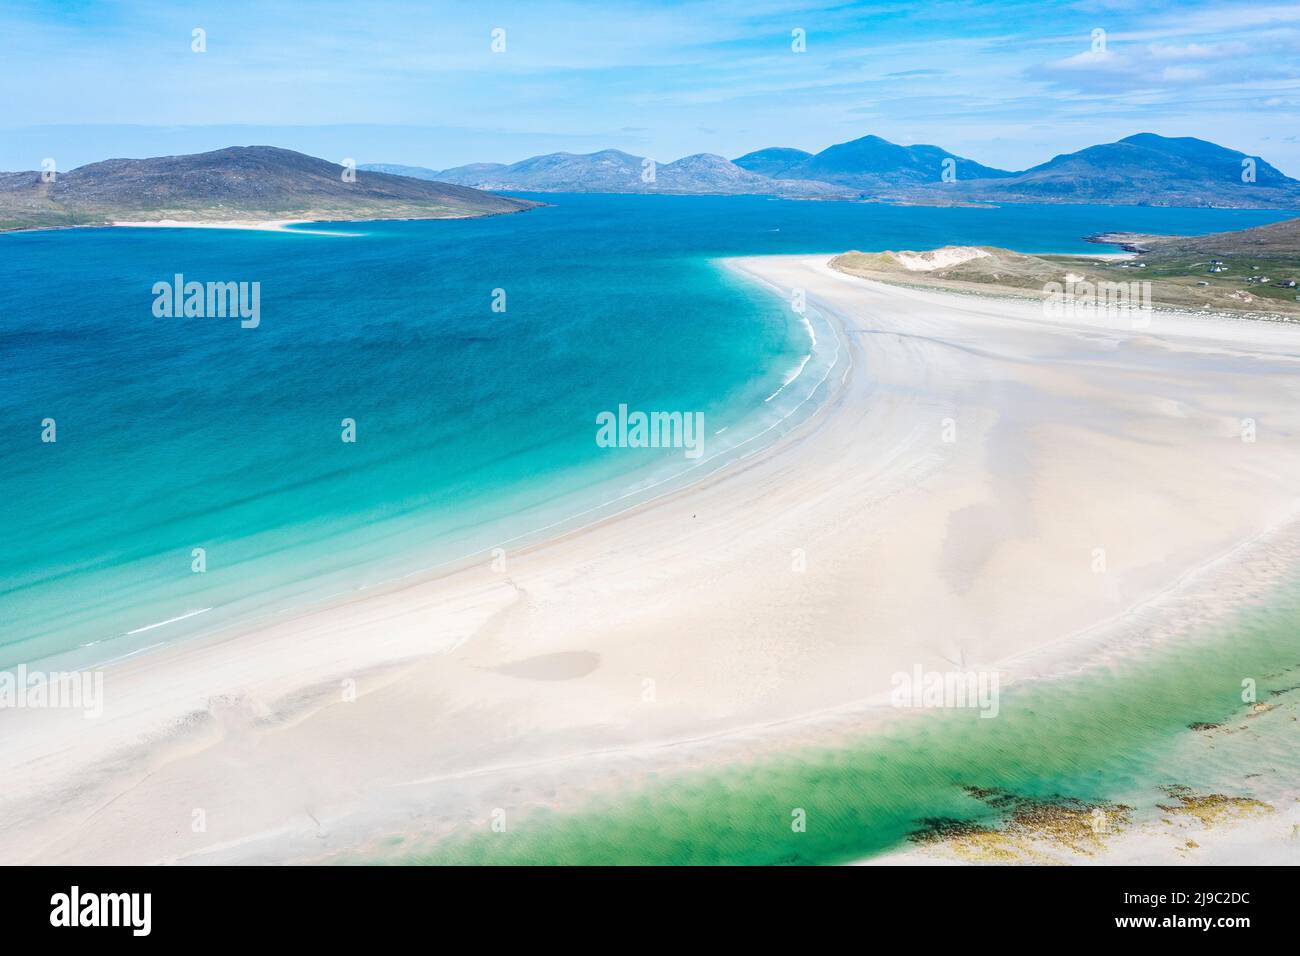 Keine Seele in Sicht, da das aquamarine Wasser gegen diesen perfekten weißen Strand fließt. Stockfoto